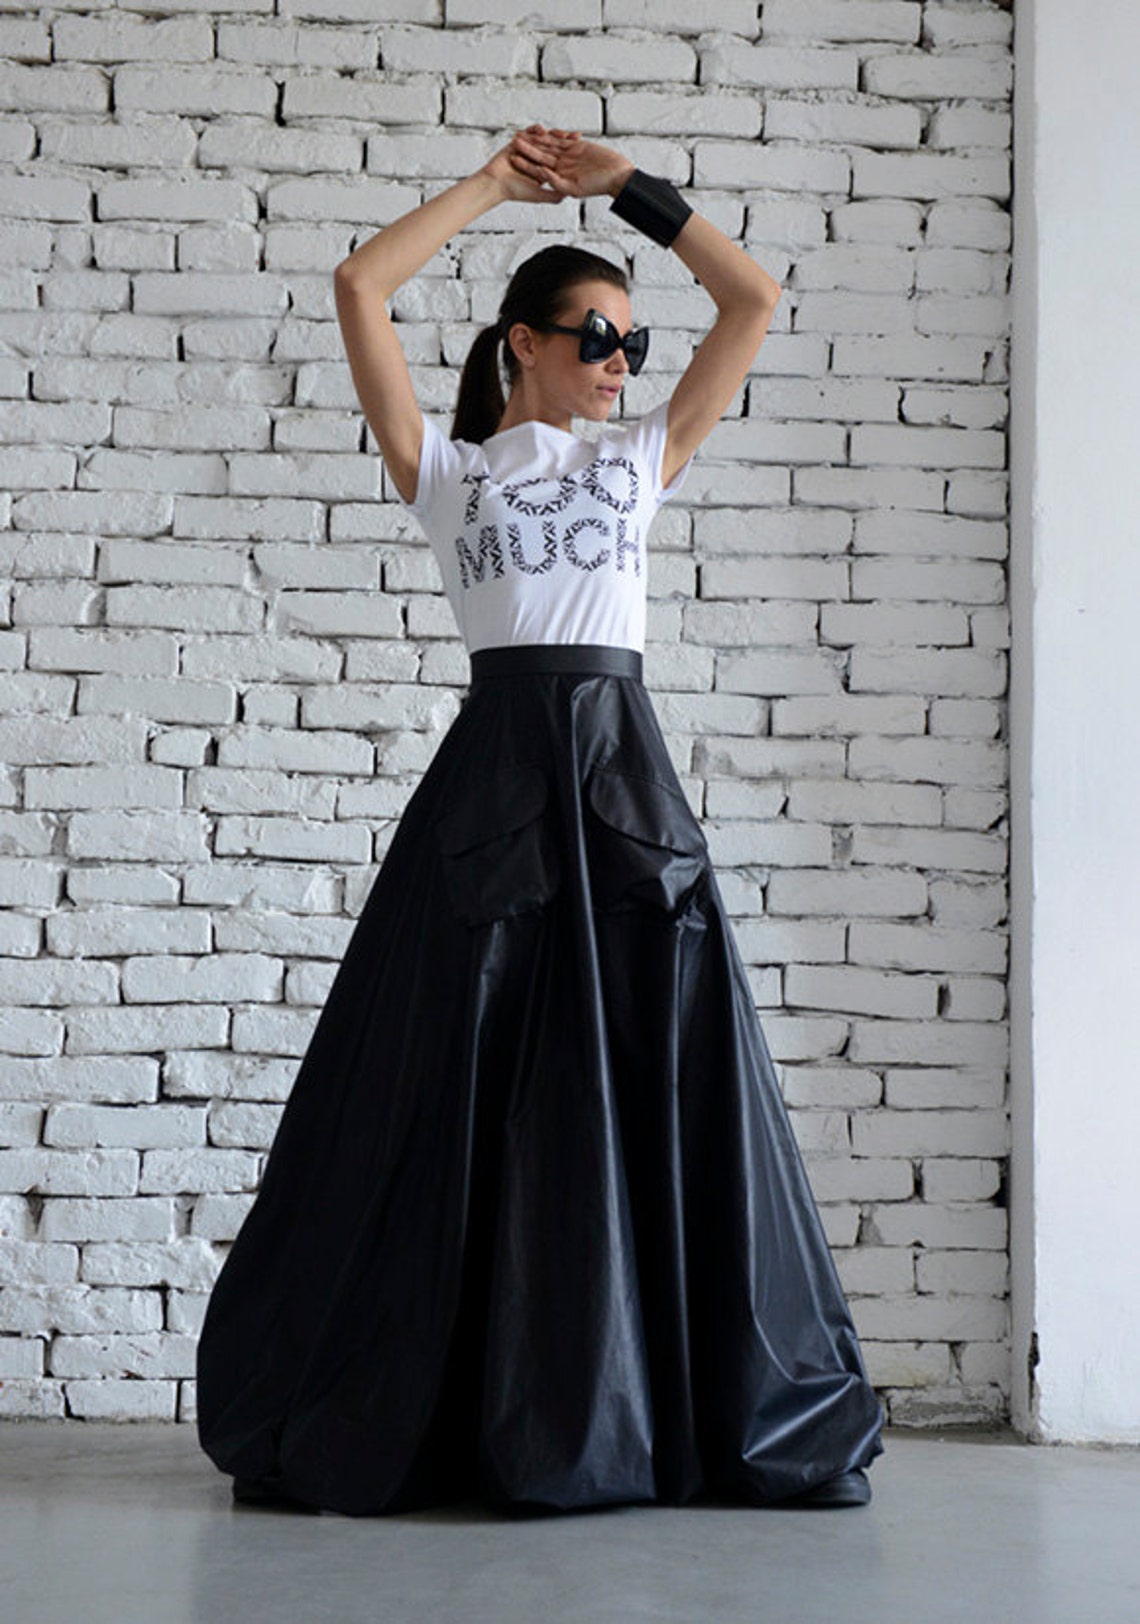 Maxi Black Skirt/Long Casual Skirt/Oversize Long Skirt/High | Etsy